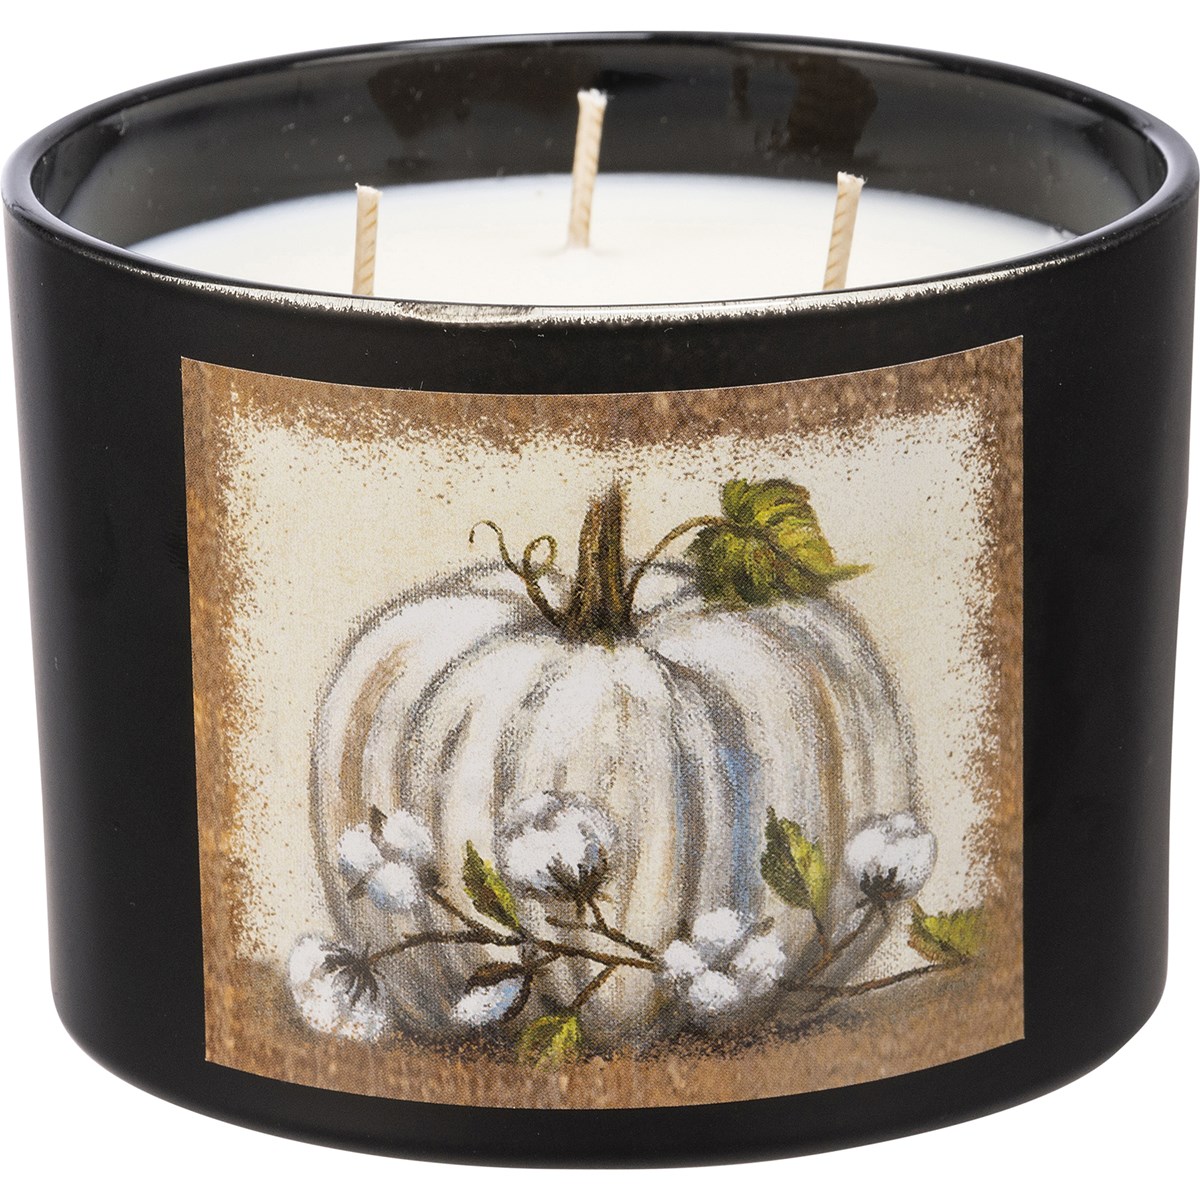 Jar Candle - White Pumpkin - 14 oz., 4.50" Diameter x 3.25" - Soy Wax, Glass, Cotton